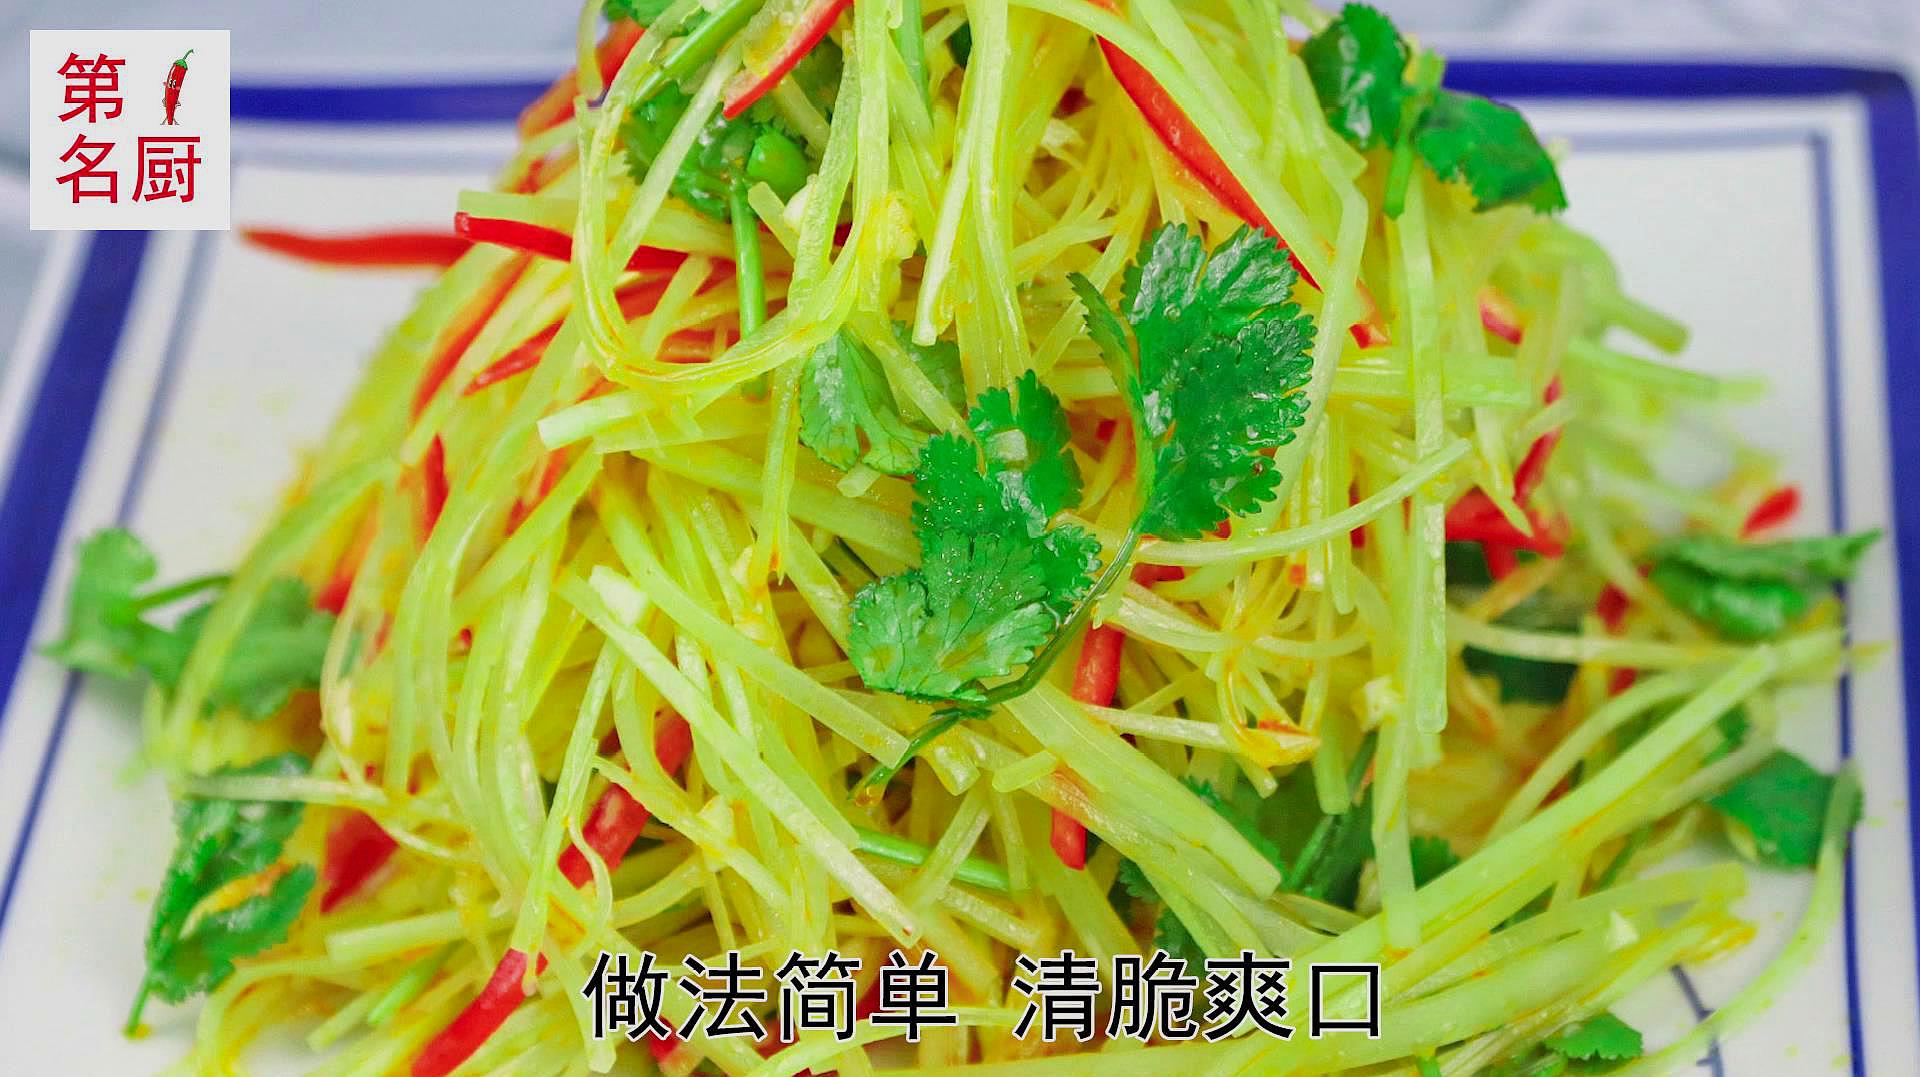 分享六道美味家常菜:青椒炒肉上榜,酸辣娃娃菜做法简单又下饭!